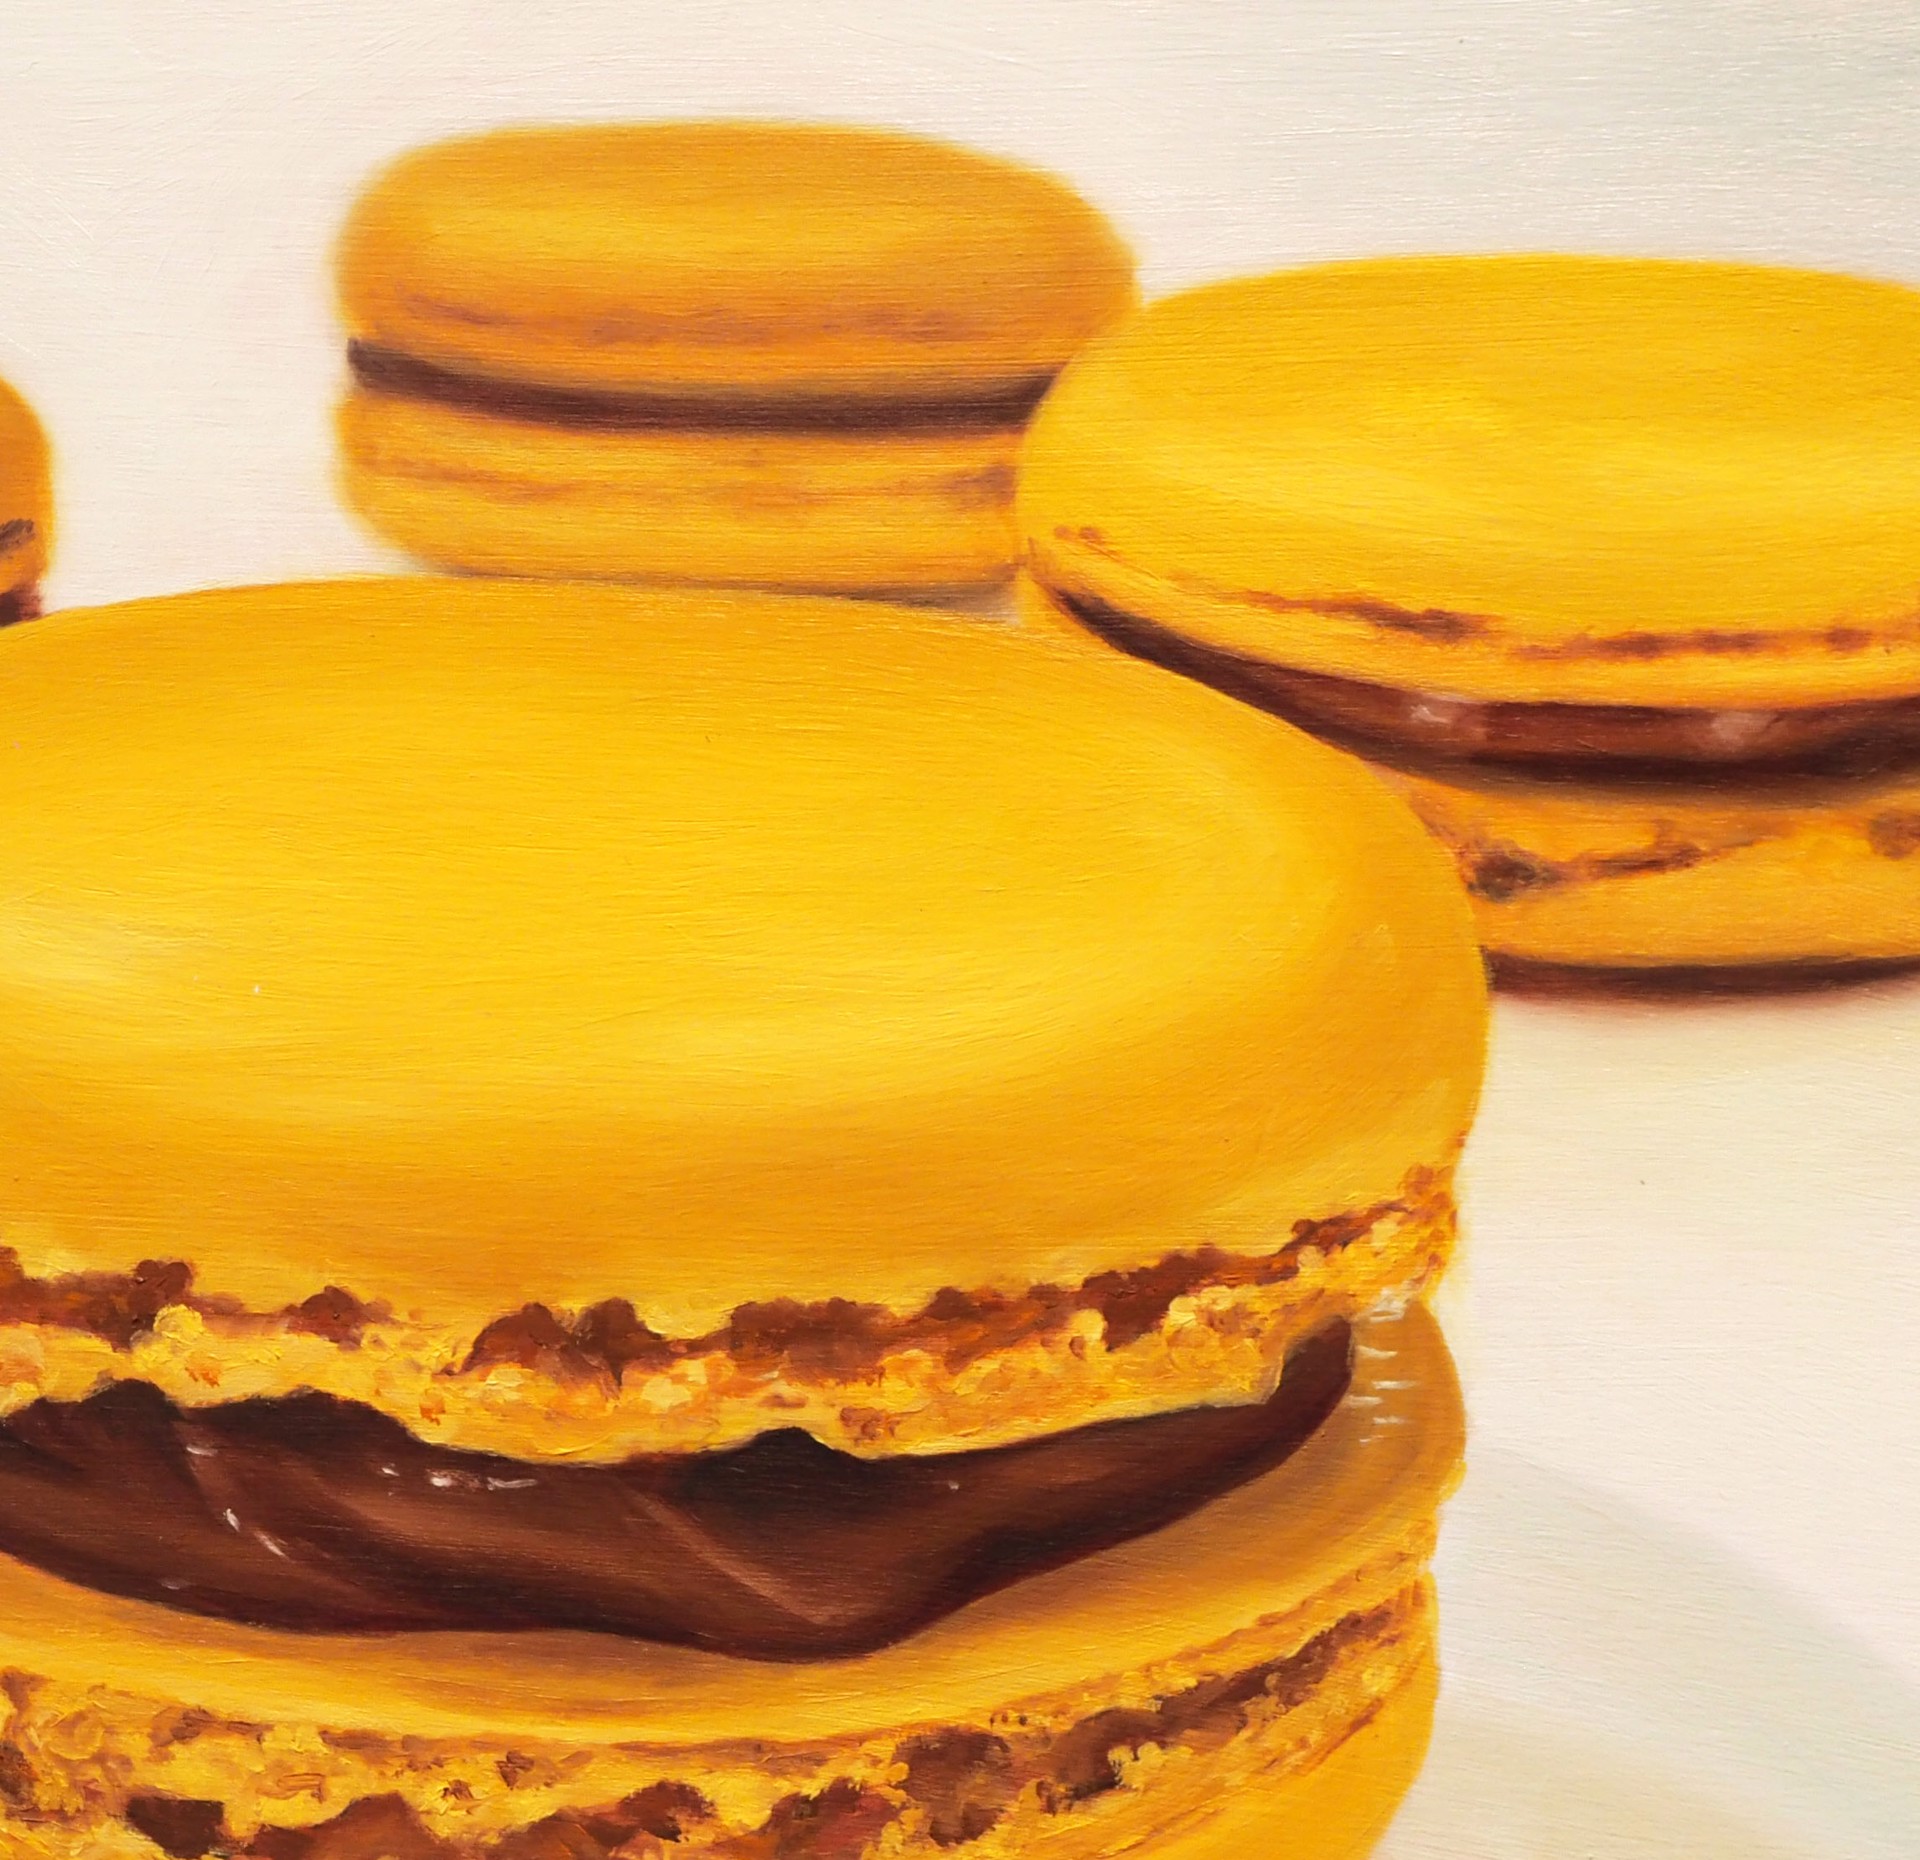 Quatre Macarons by Amanda Coelho